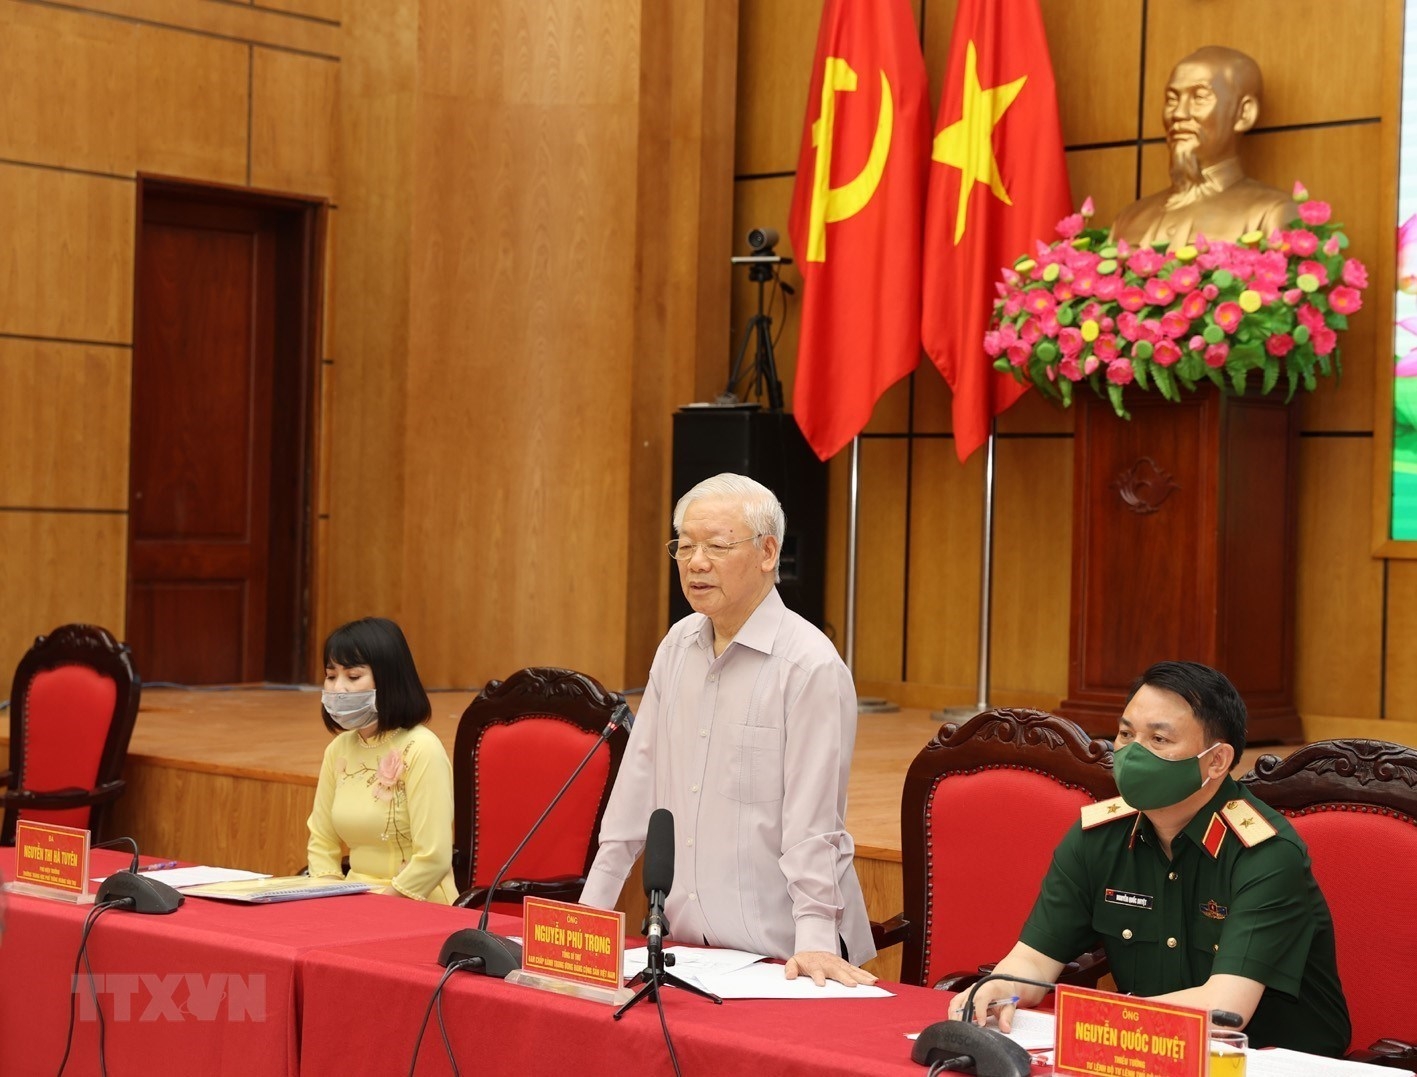 Tổng Bí thư dự Hội nghị tiếp xúc cử tri Đơn vị bầu cử số 1 của Hà Nội